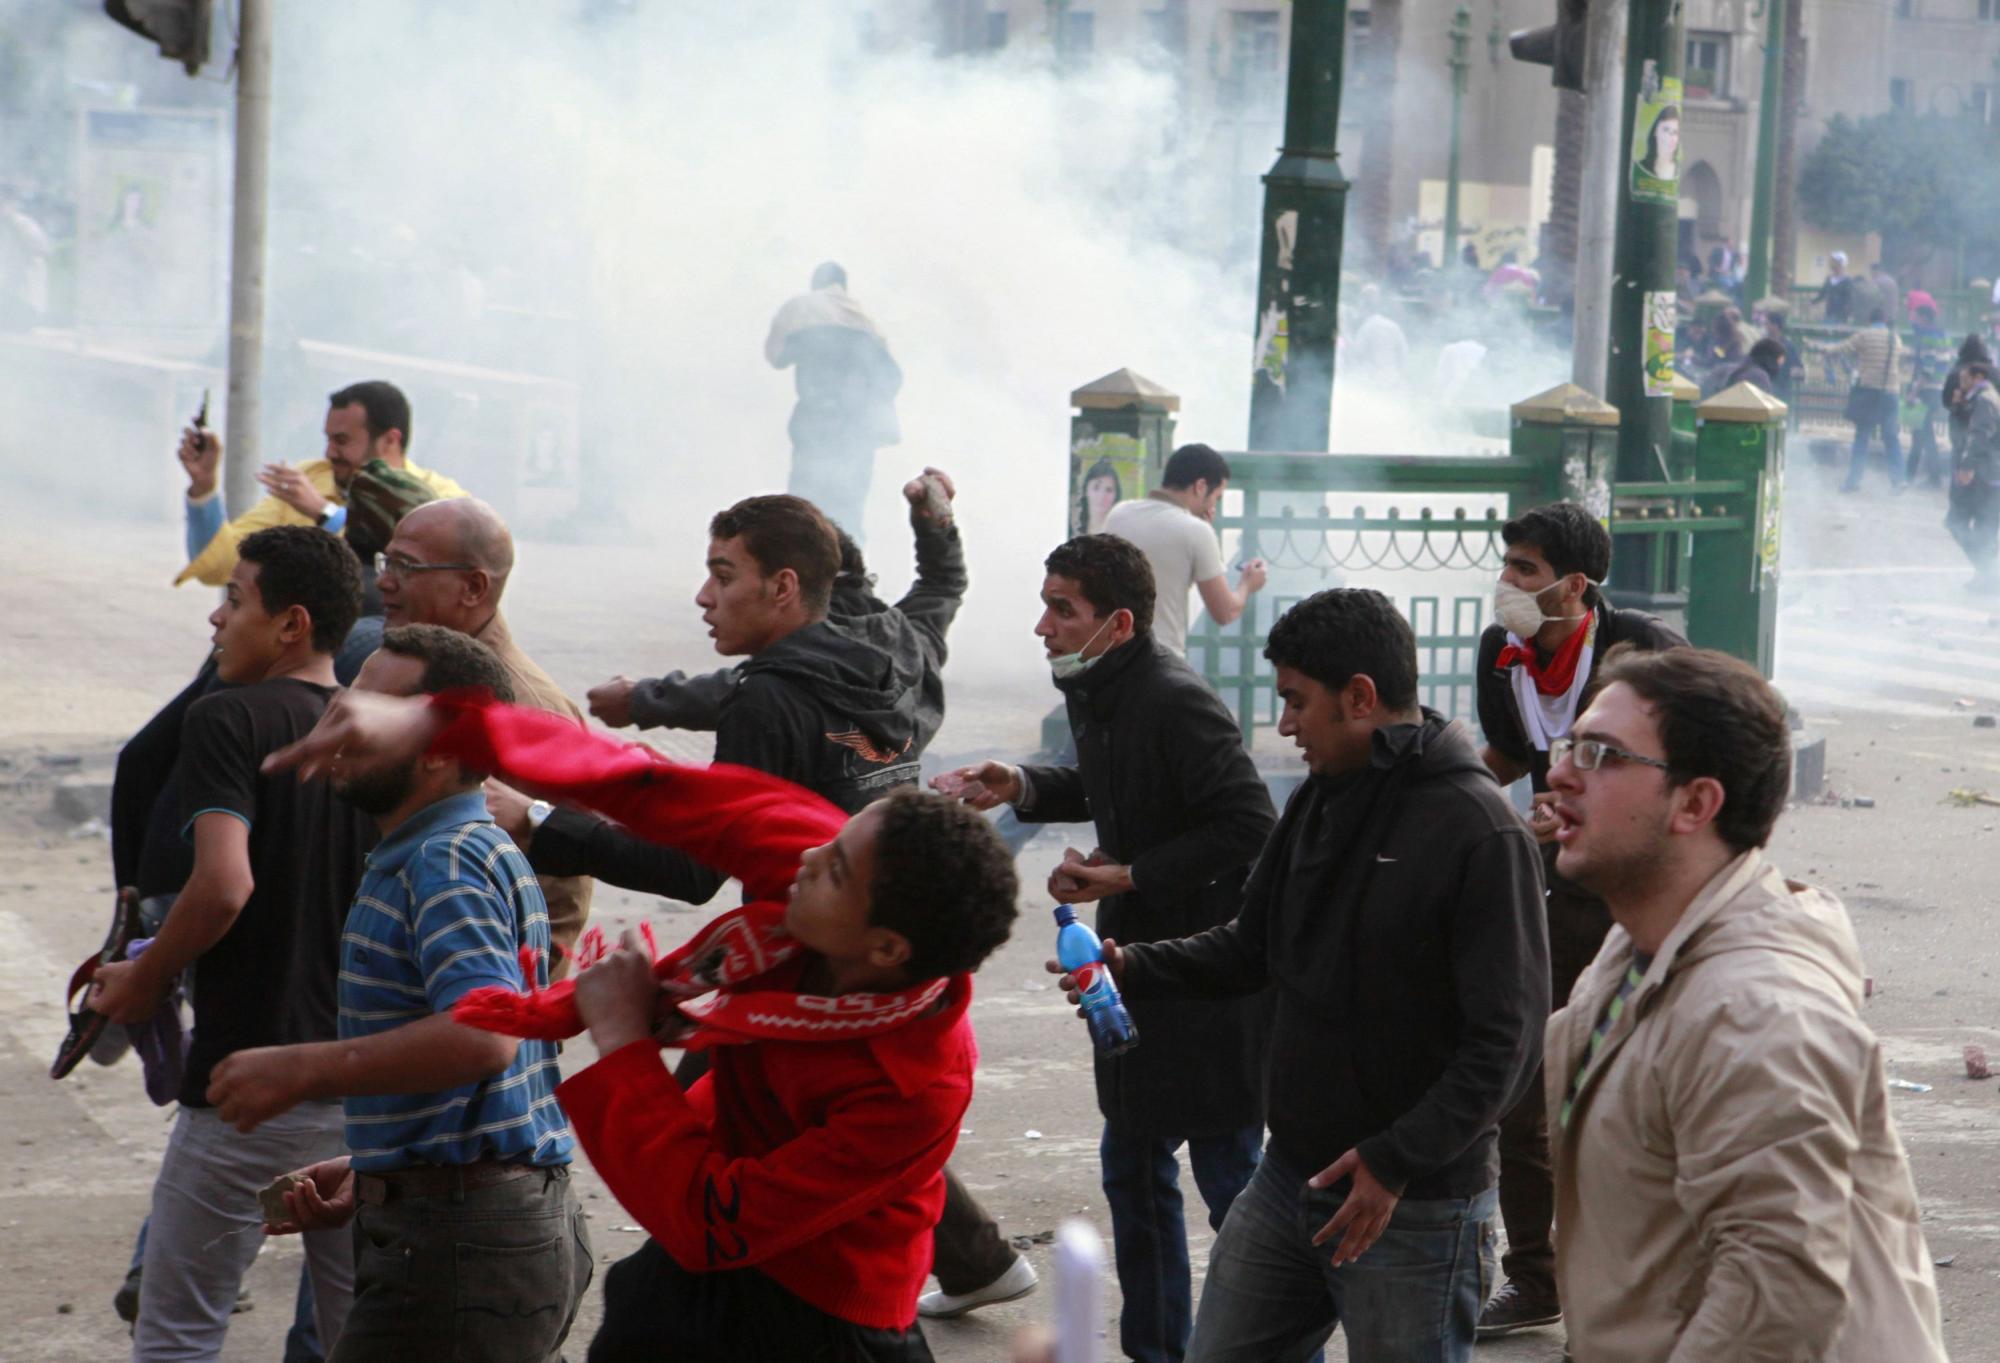 埃及多地军警清场引发激烈冲突 至少2死700余伤